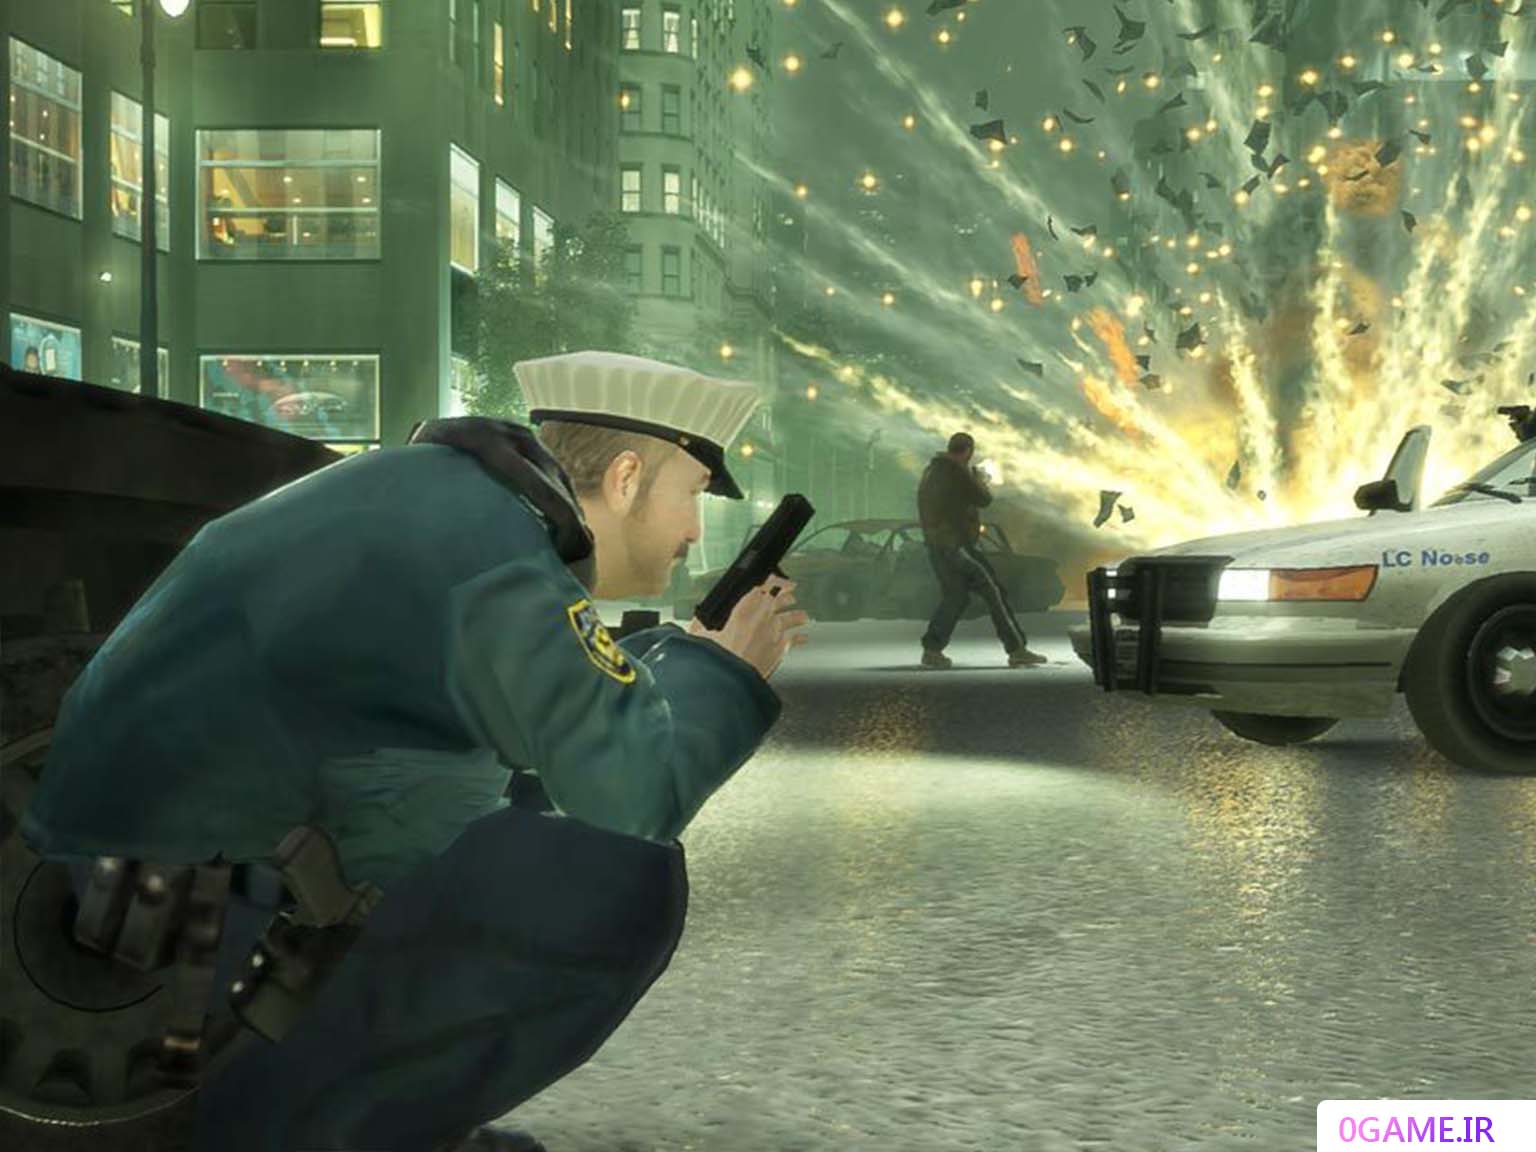 دانلود بازی جی تی ای ای وی (Grand Theft Auto IV) نسخه کامل برای کامپیوتر